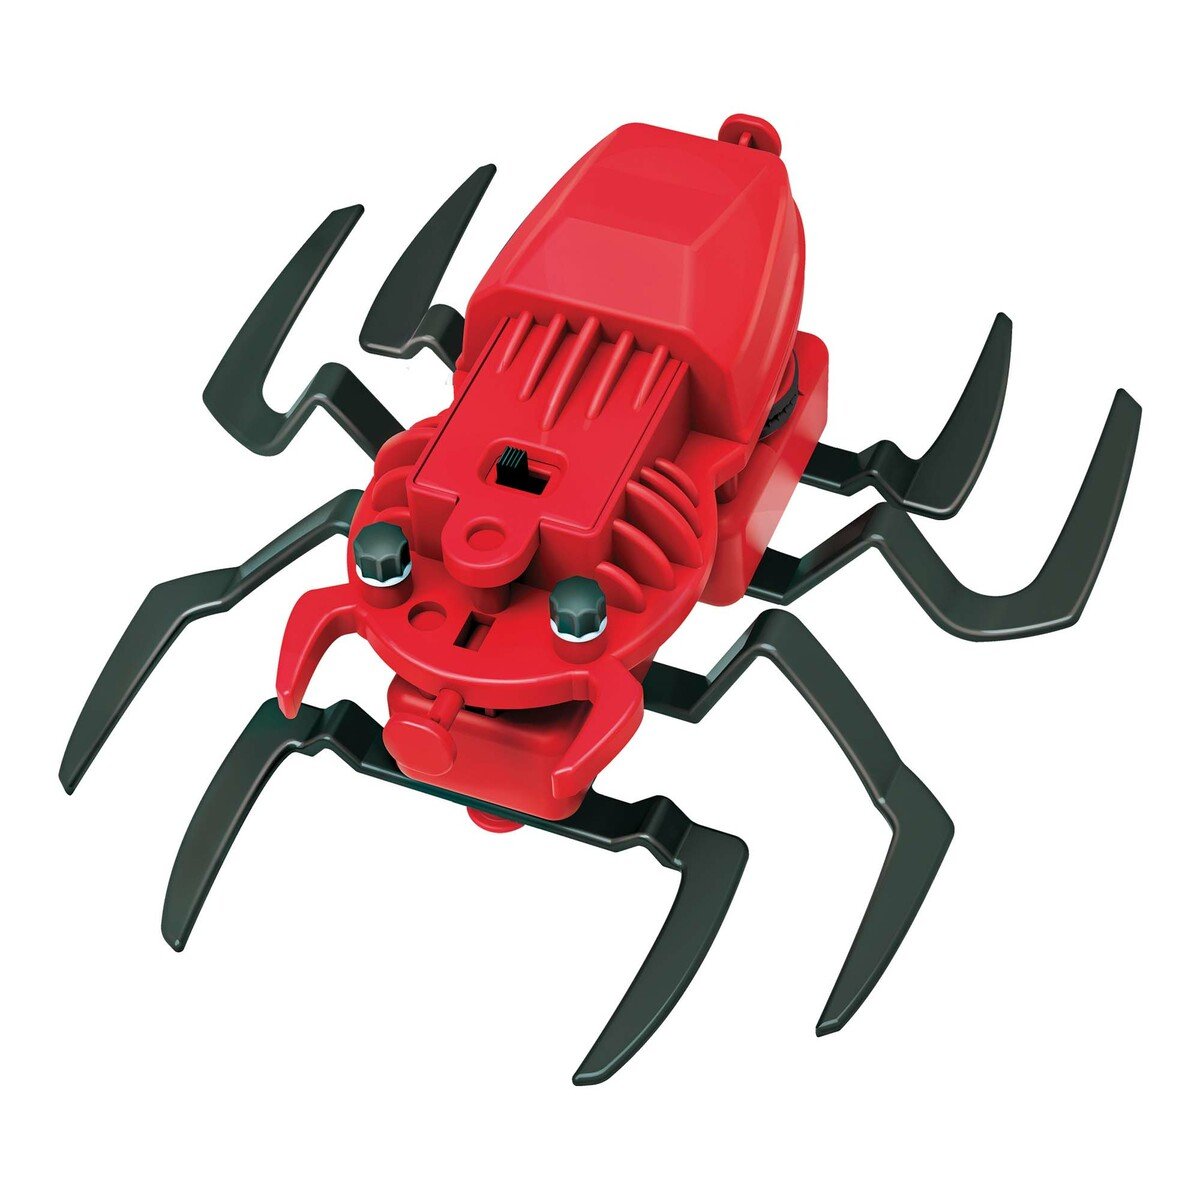 4M Kidz Spider Robot 3392